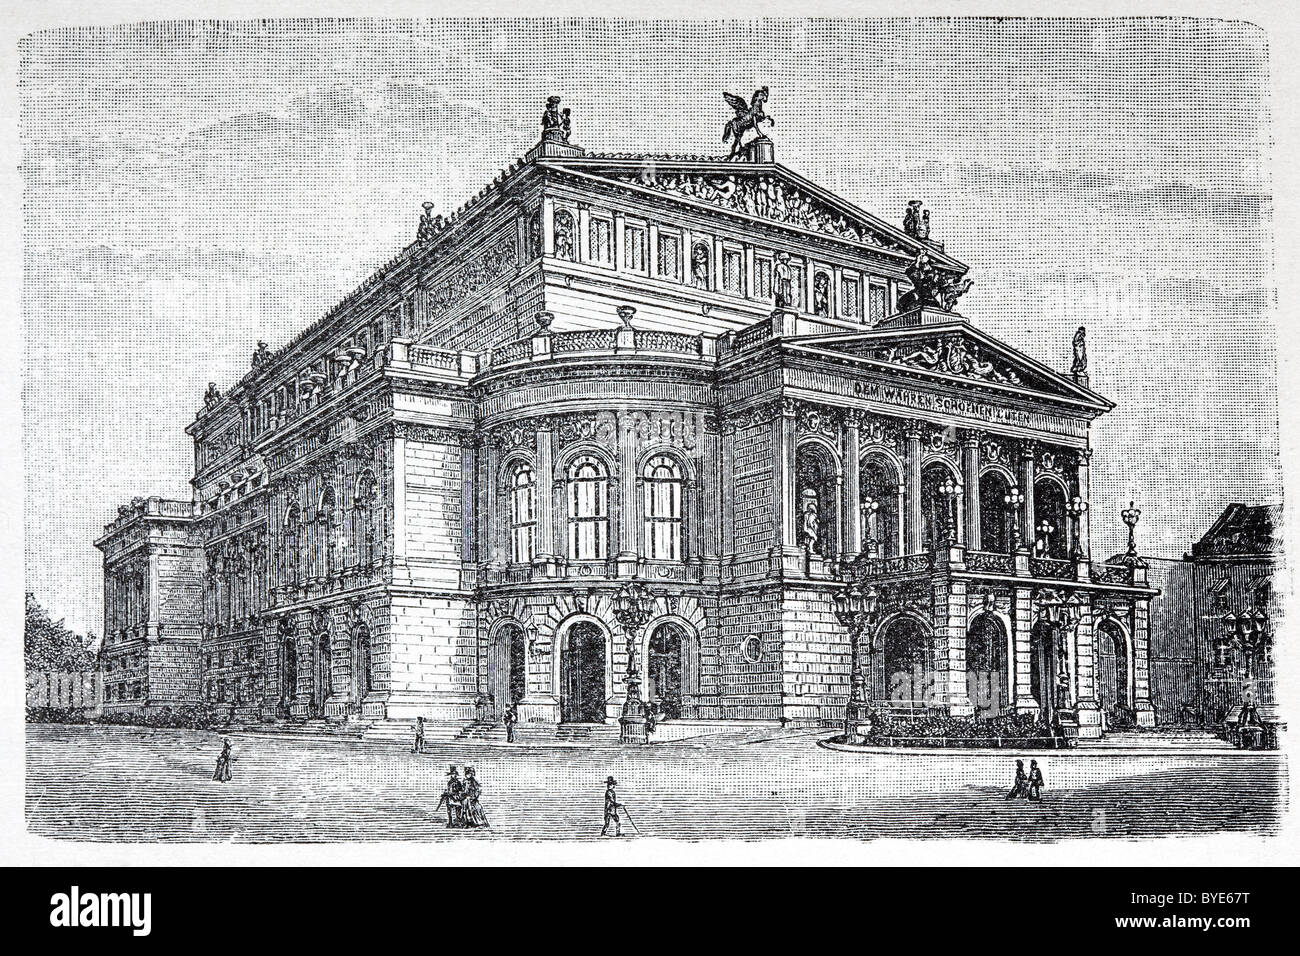 Alte Oper, opera Haus, Frankfurt am Main, Hesse, libro storico illustrazione del XIX secolo, incisione in acciaio Foto Stock